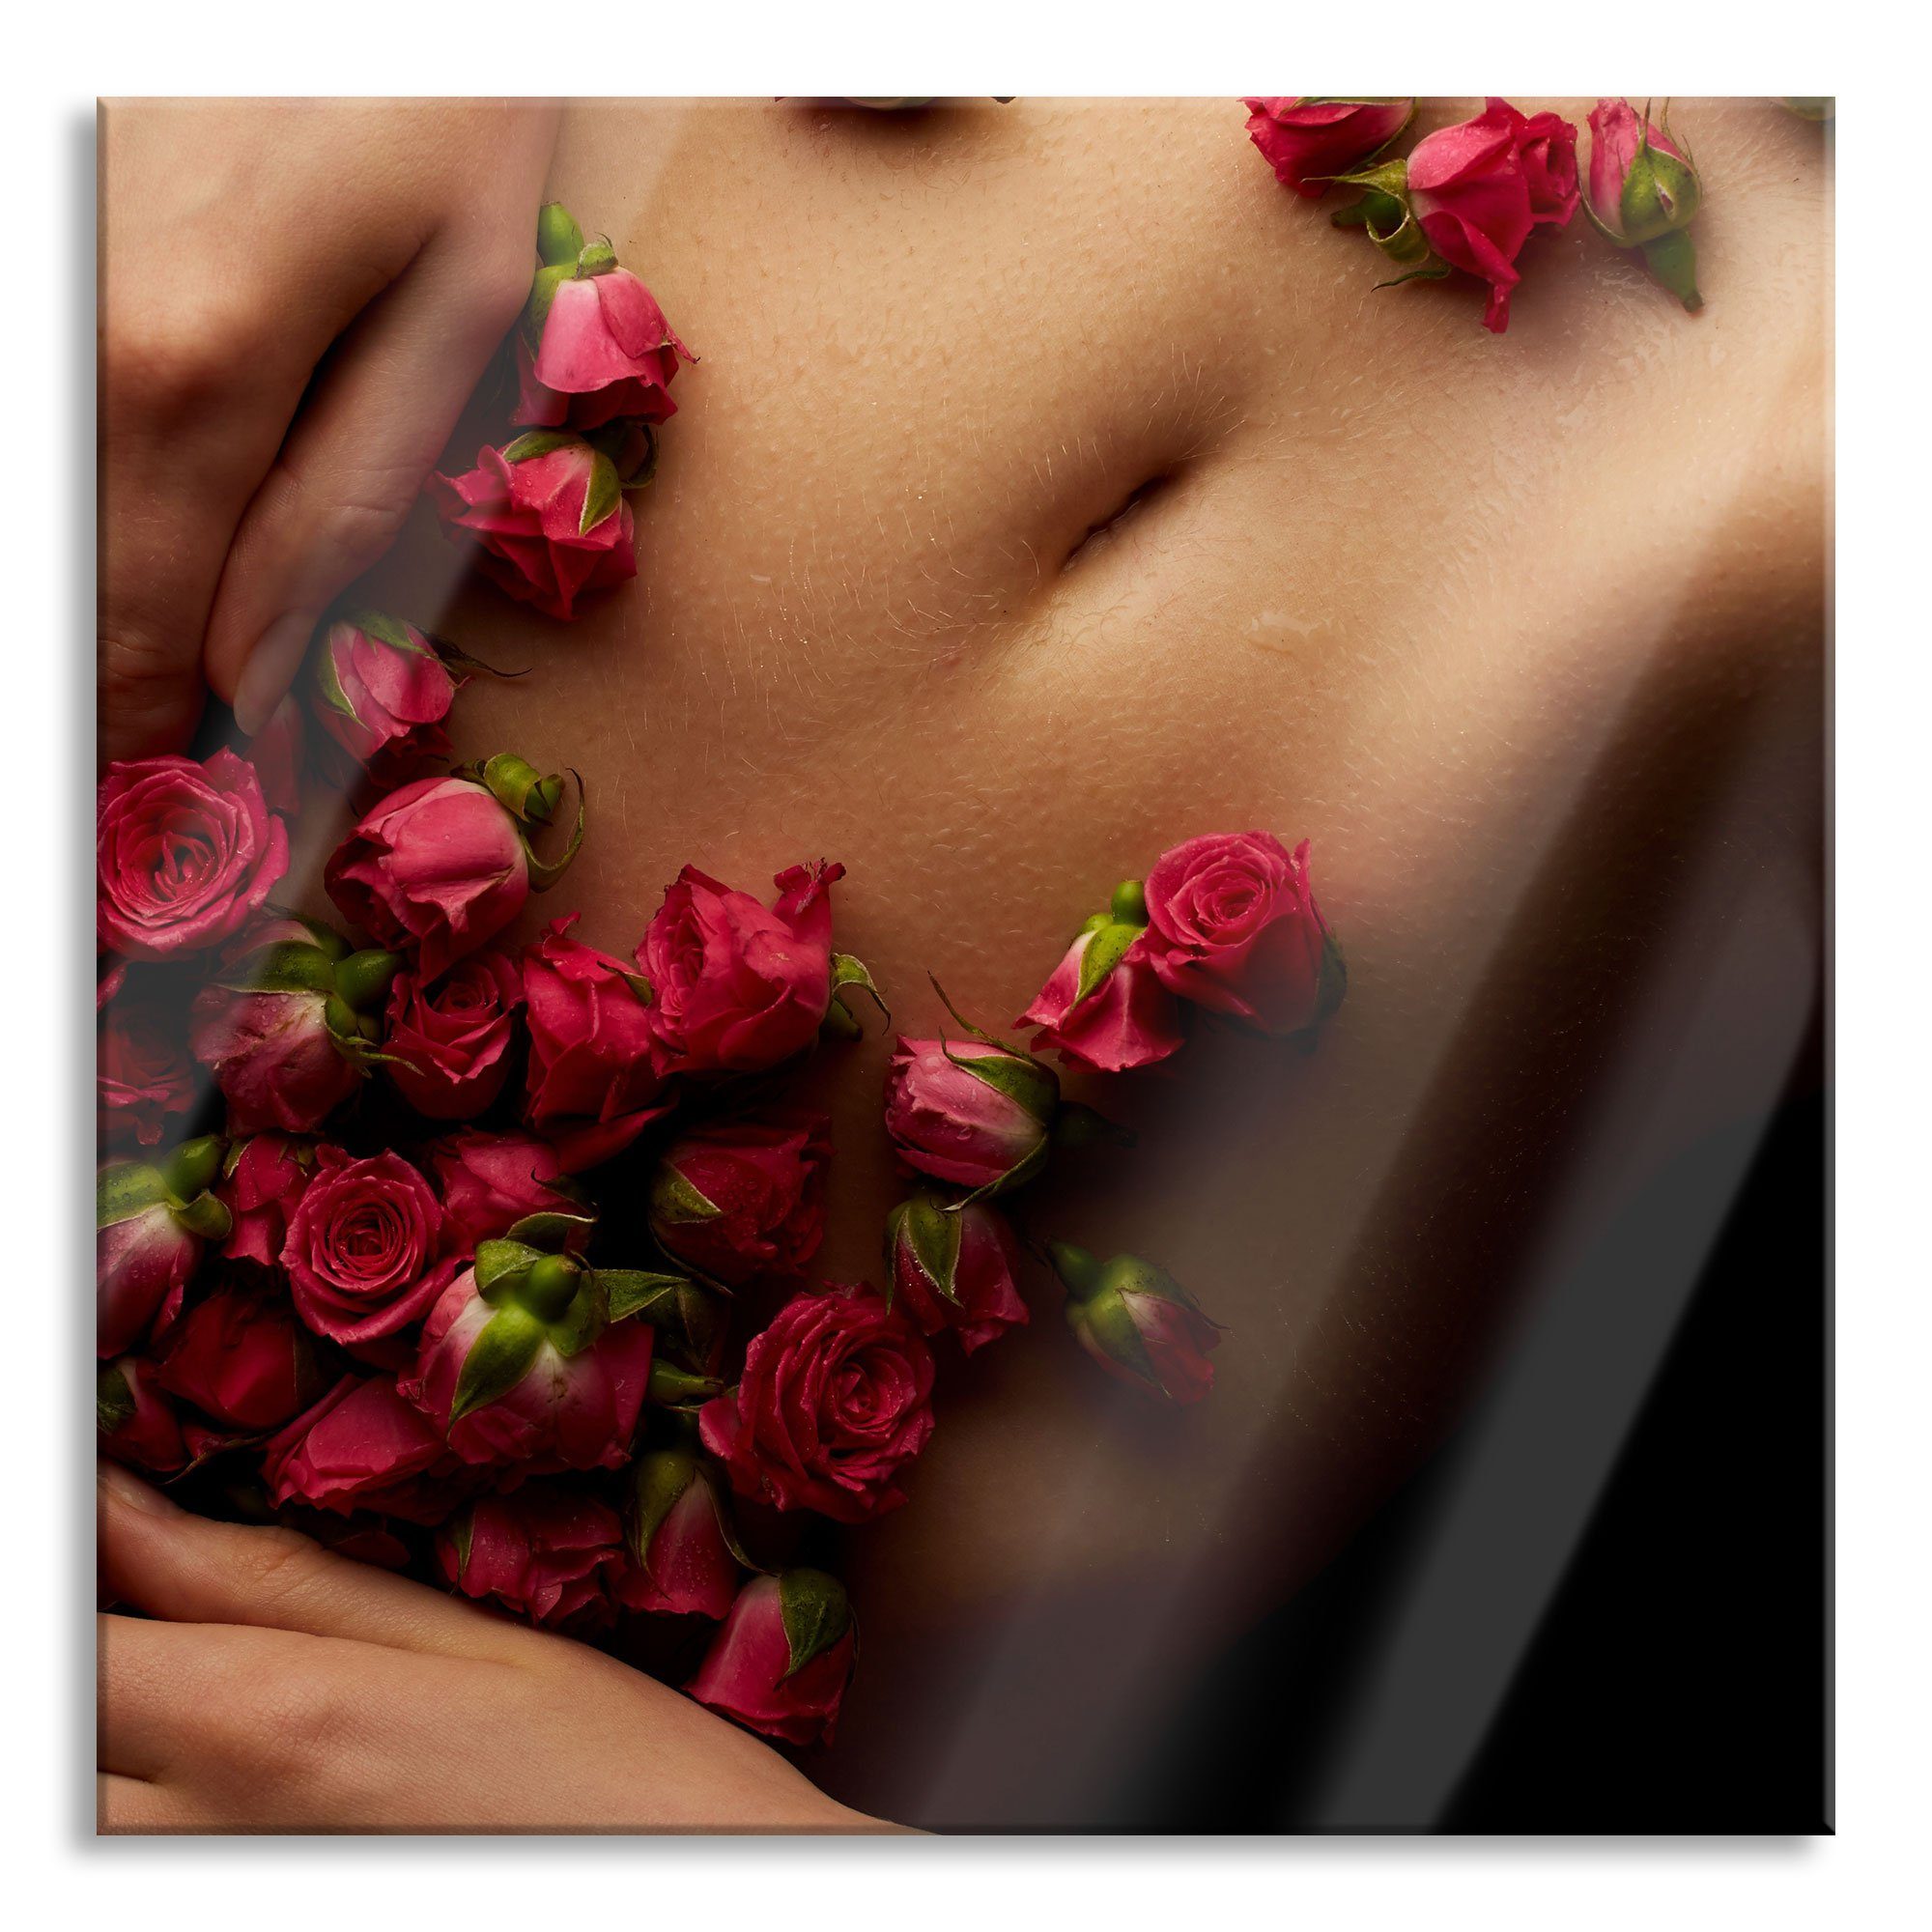 Pixxprint Glasbild weiblicher Körper mit Rosen Blumen, weiblicher Körper mit Rosen Blumen (1 St), Glasbild aus Echtglas, inkl. Aufhängungen und Abstandshalter